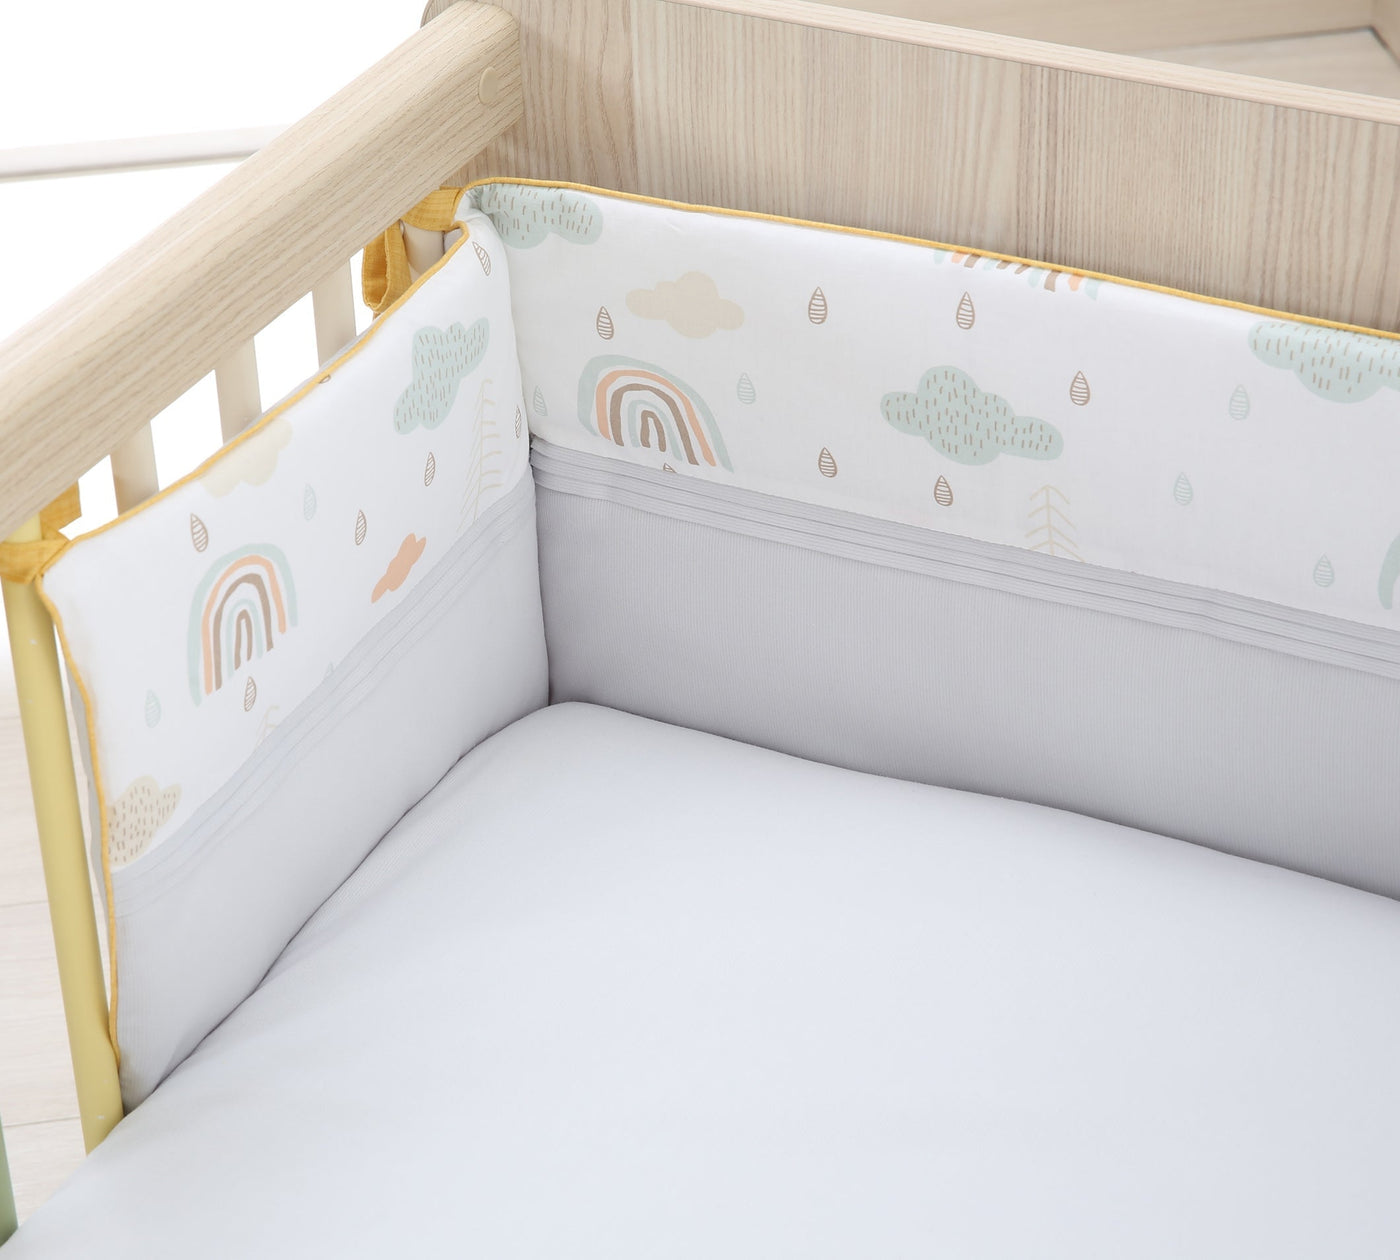 Smile Baby Bedding Set [60x120 Cm]